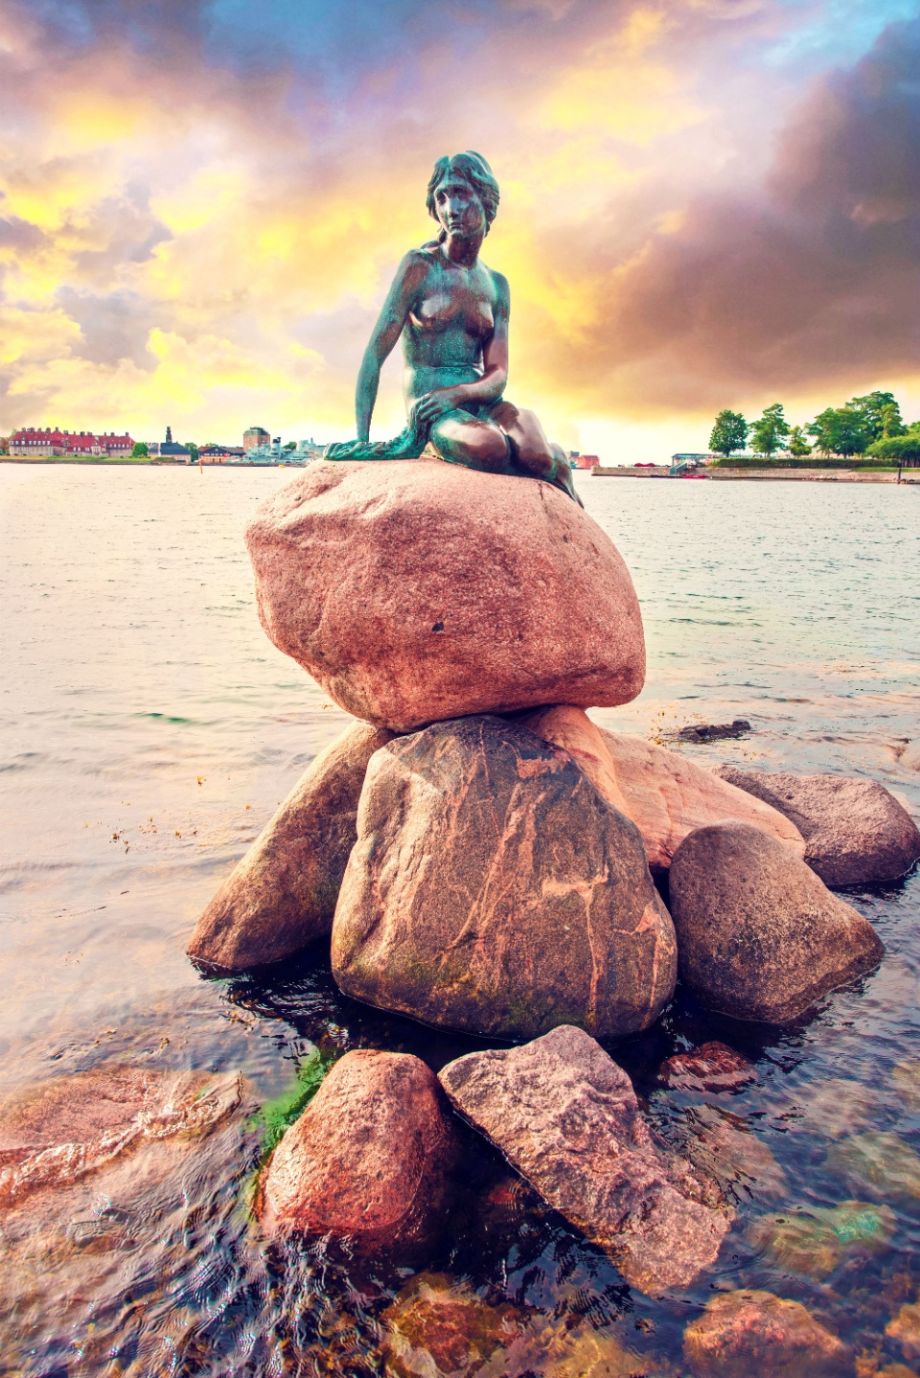 Famous bronze sculpture of a little mermaid in Copenhagen, Denmark. Photo: Andrij Vatsyk / Shutterstock.com.